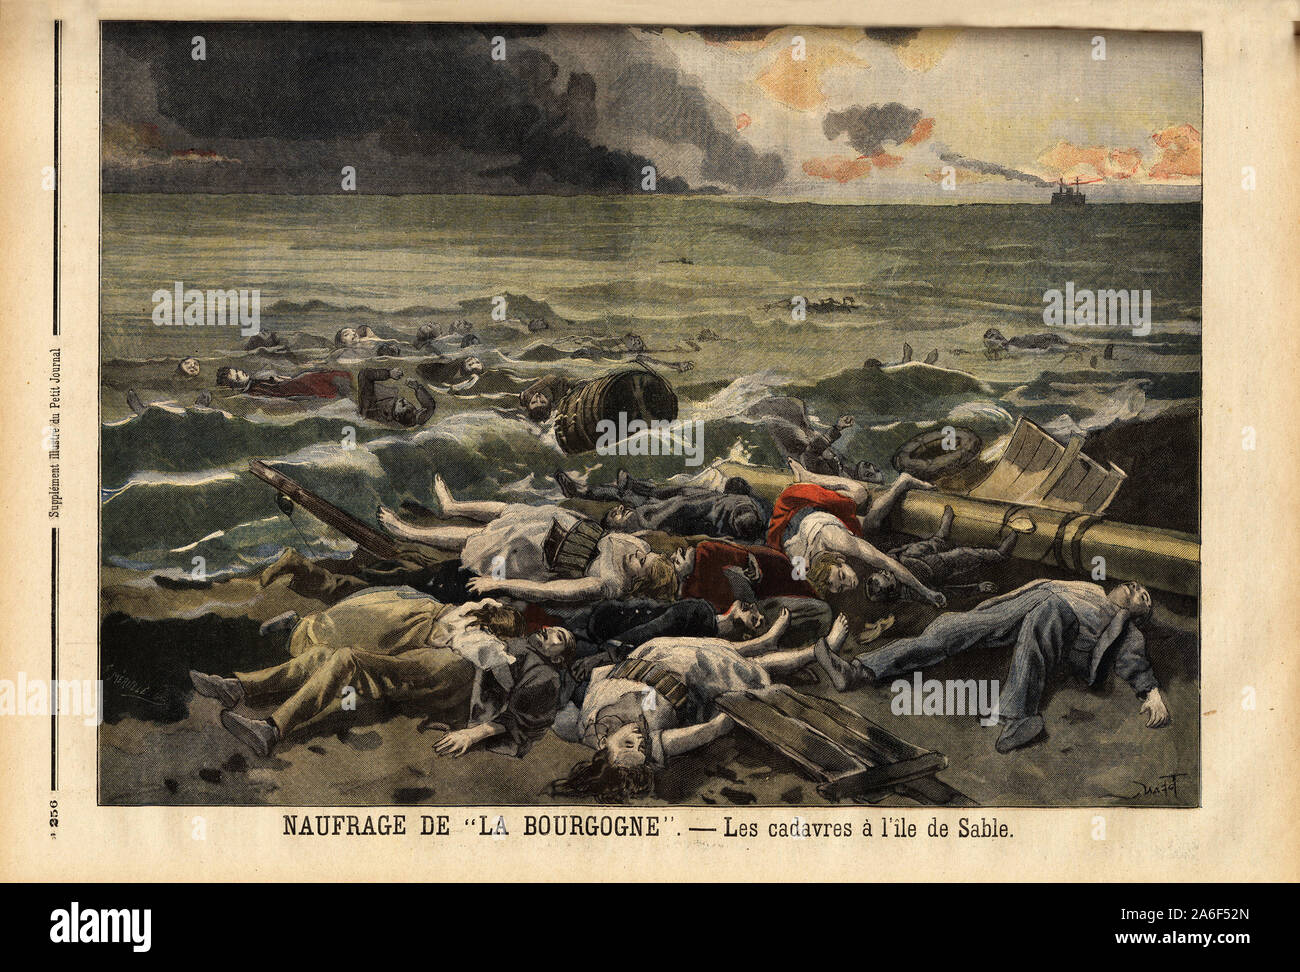 Amoncellement des cadavres des naufrages du navire La bourgogne, sur l'ile de sable, au nord ouest d'Halifax. Gravure dans 'Le petit journal' 7/8/1898. Banque D'Images